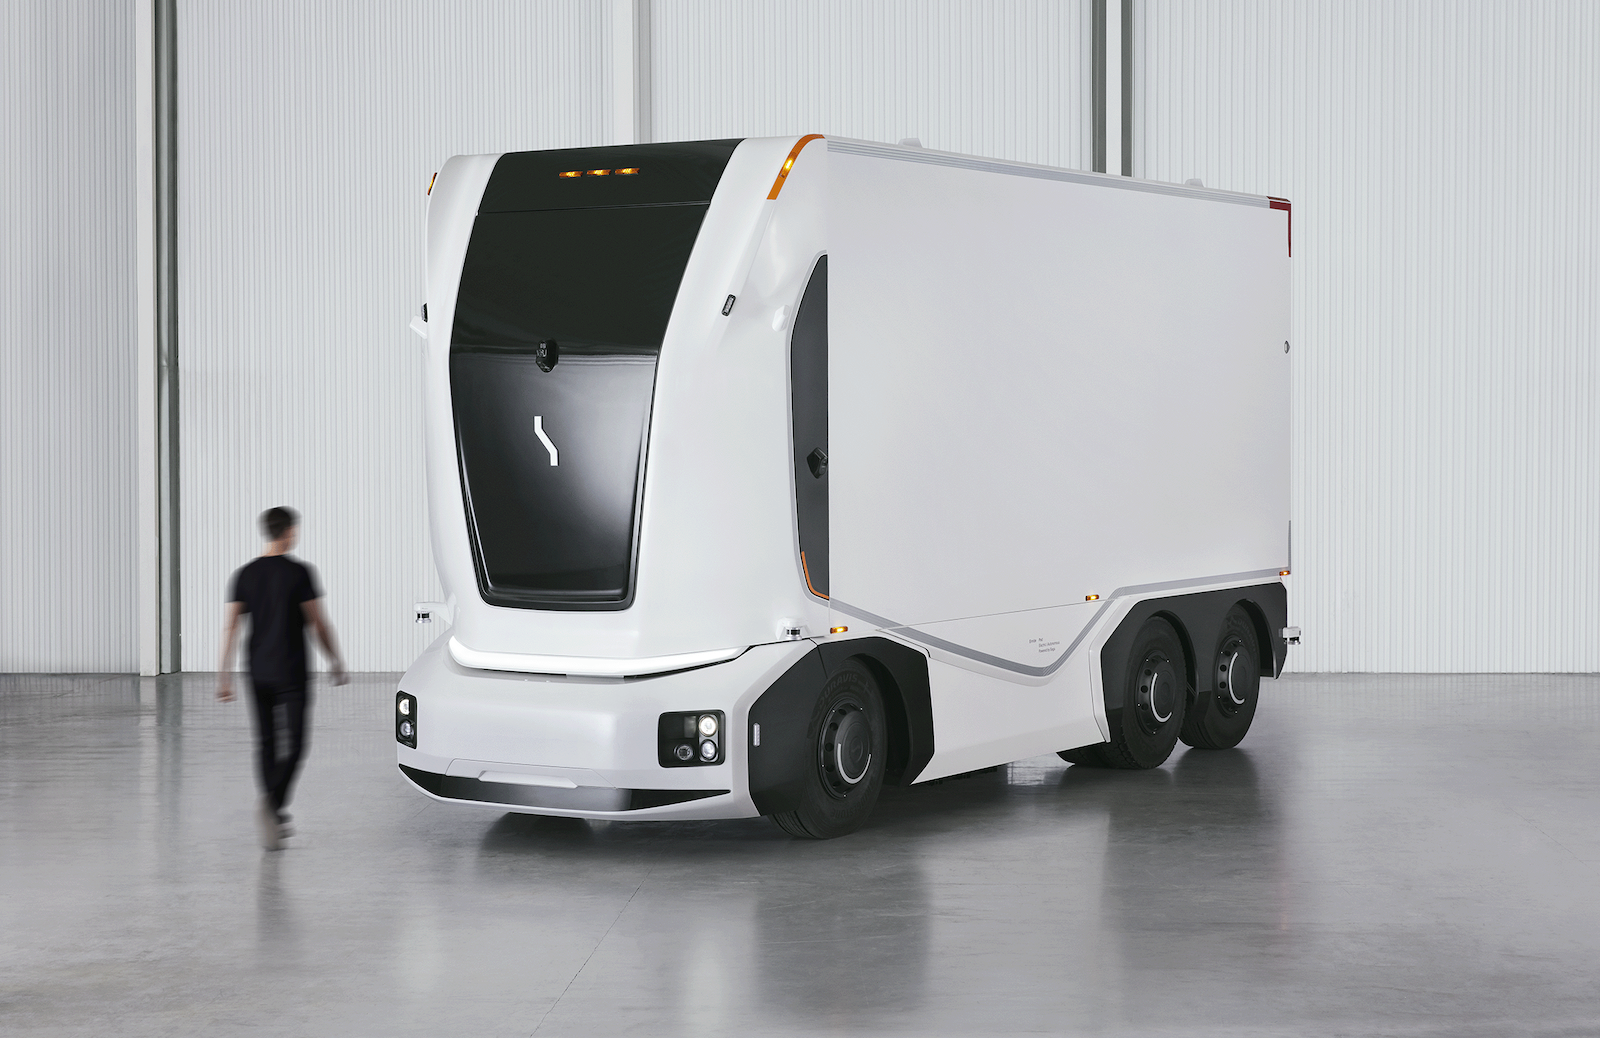 Picture of EV startup Einride's autonomous vehicle